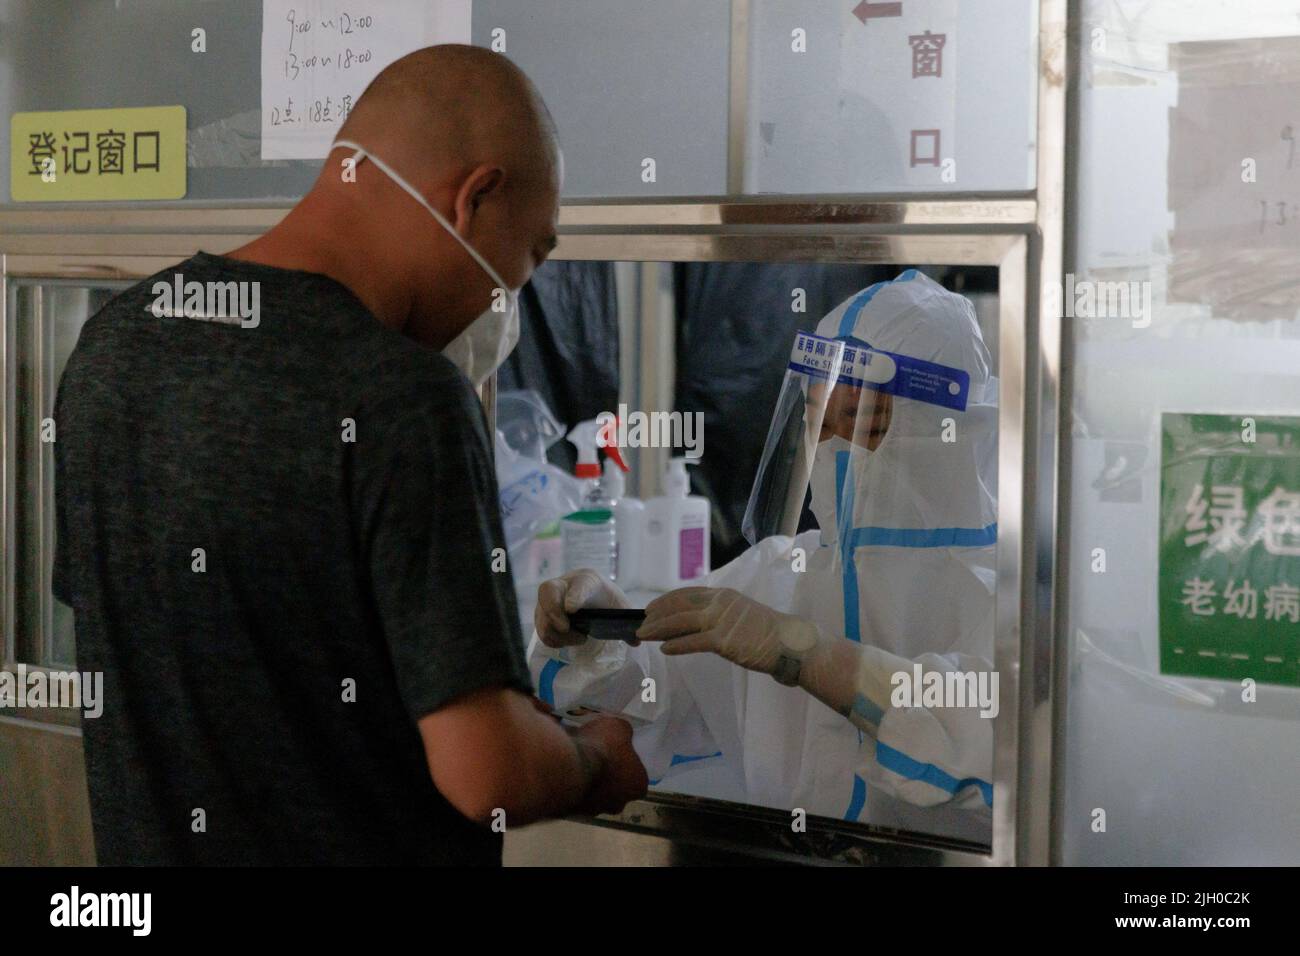 Un operatore medico scansiona la carta d'identità di un uomo in una stazione di analisi degli acidi nucleici, a seguito di un focolaio di coronavirus (COVID-19), a Pechino, Cina, 14 luglio 2022. REUTERS/Thomas Peter Foto Stock